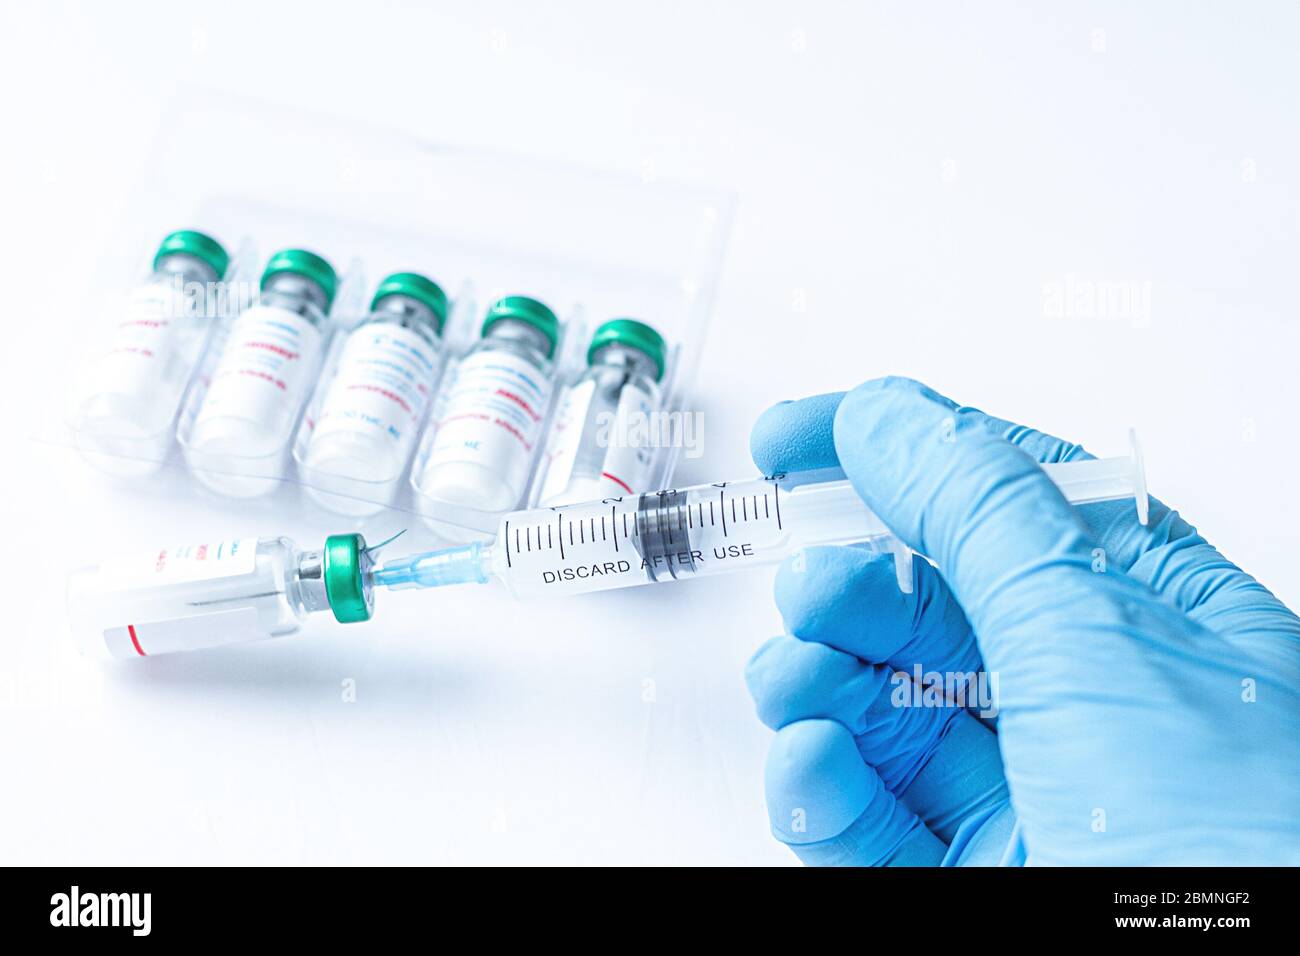 La main du médecin dans un gant médical tient une seringue avec le coronavirus, le COVID-19,nCoV 2019 et le vaccin contre la grippe. Médecine infectieuse concept. Banque D'Images